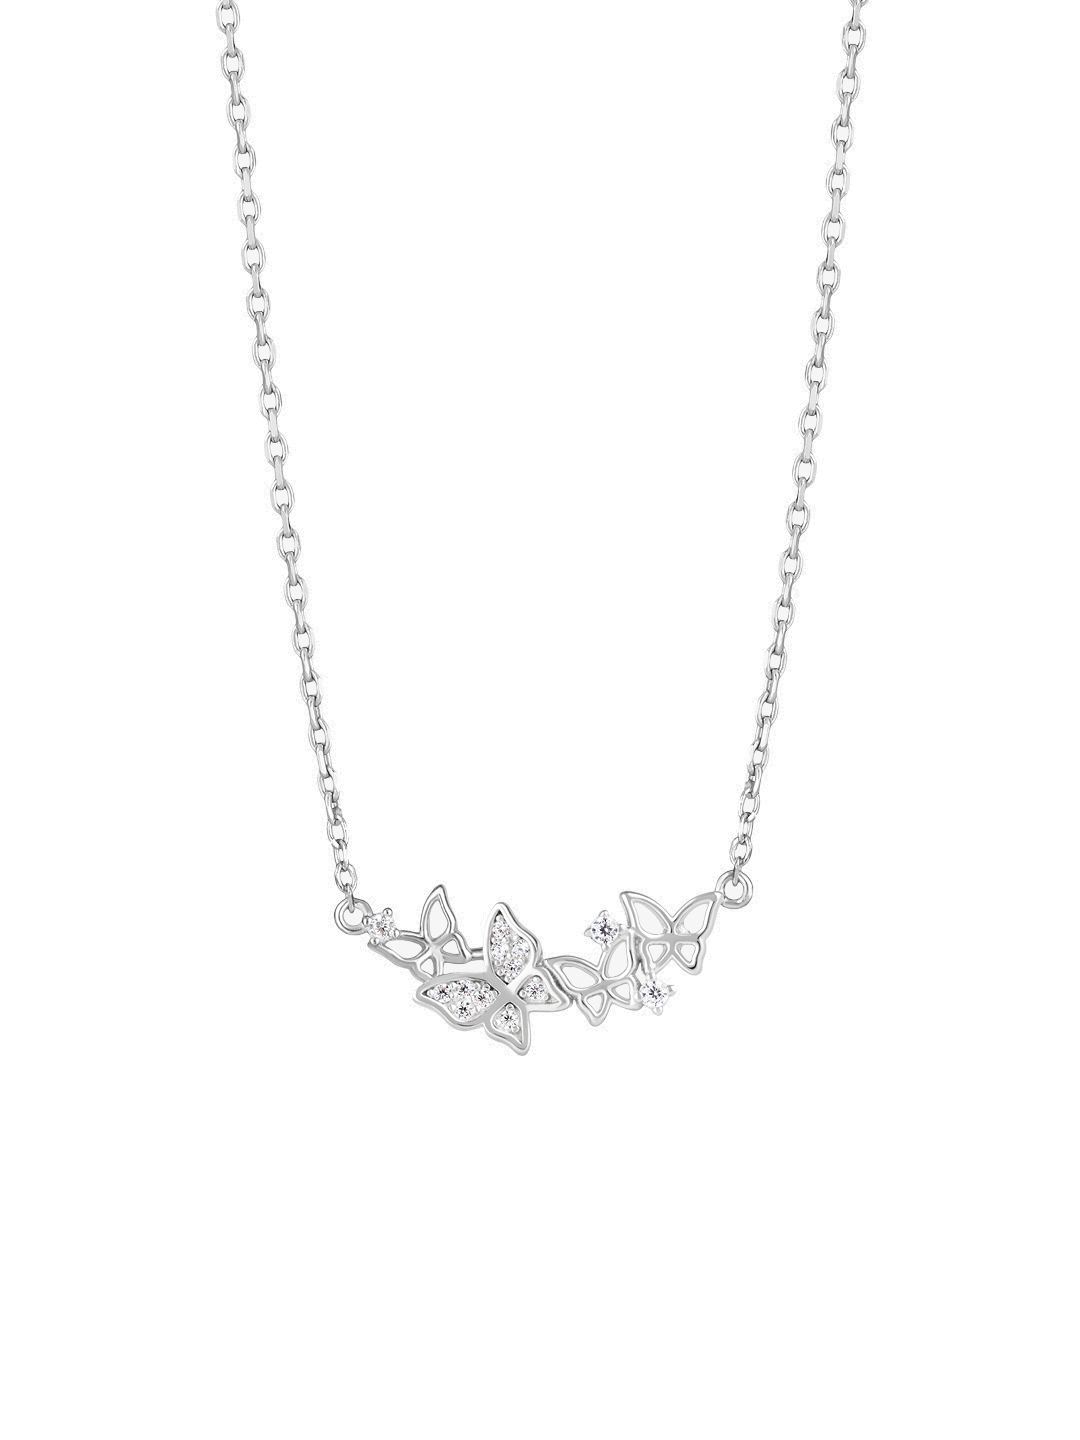 Preciosa Něžný stříbrný náhrdelník s motýlky Butterfly Waltz Candy 5398 00